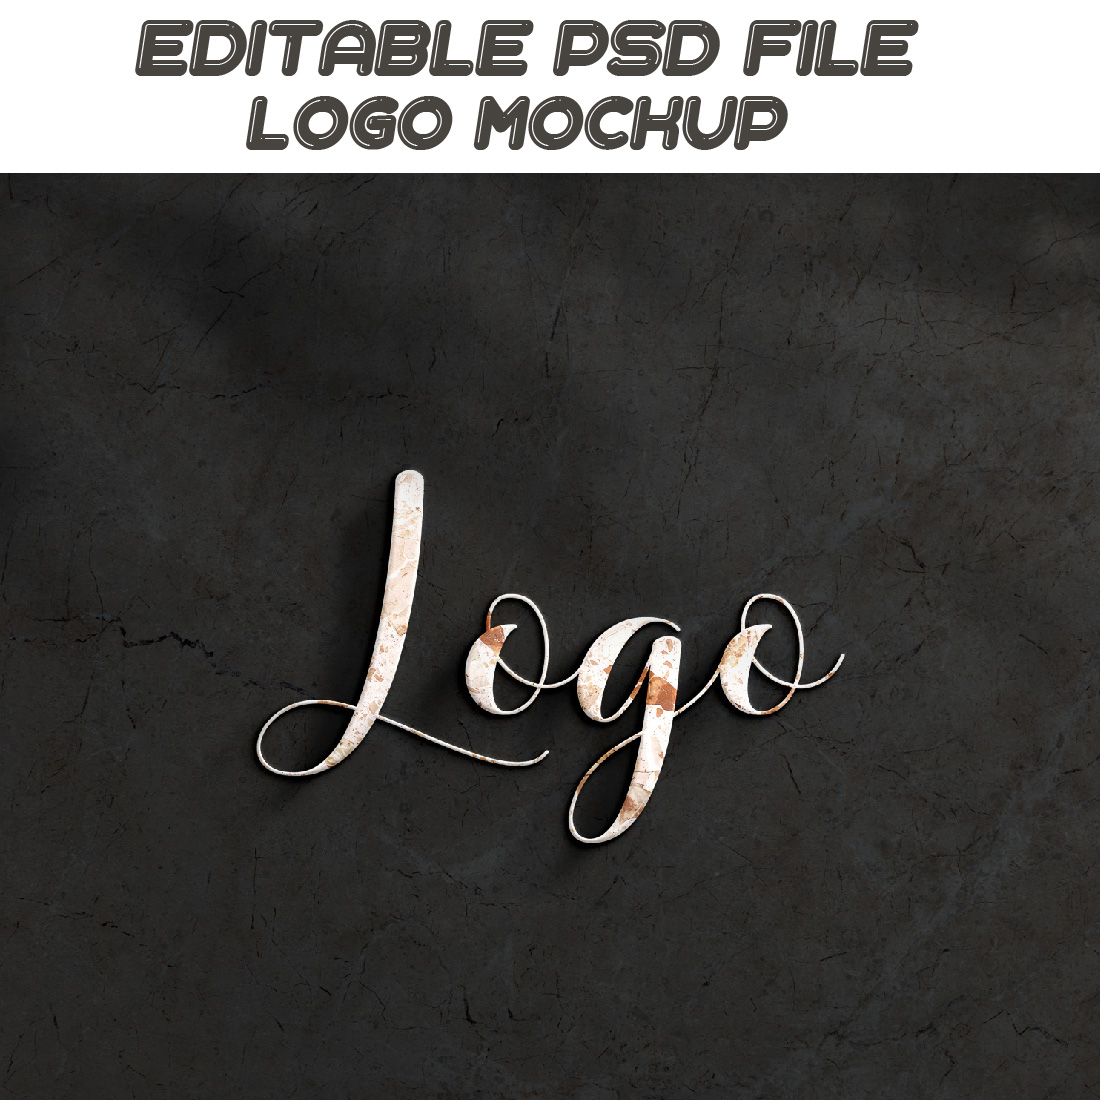 3D Logo Mockup design cover image.